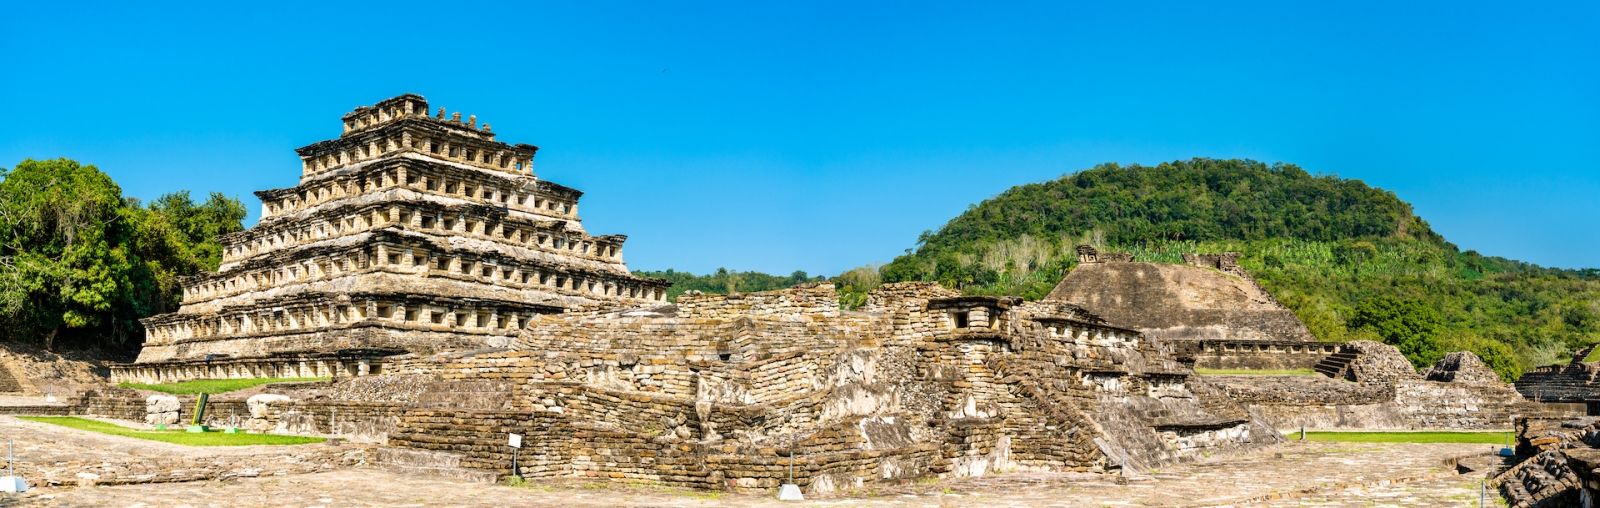 El Tajin, un site archéologique précolombien du sud du Mexique